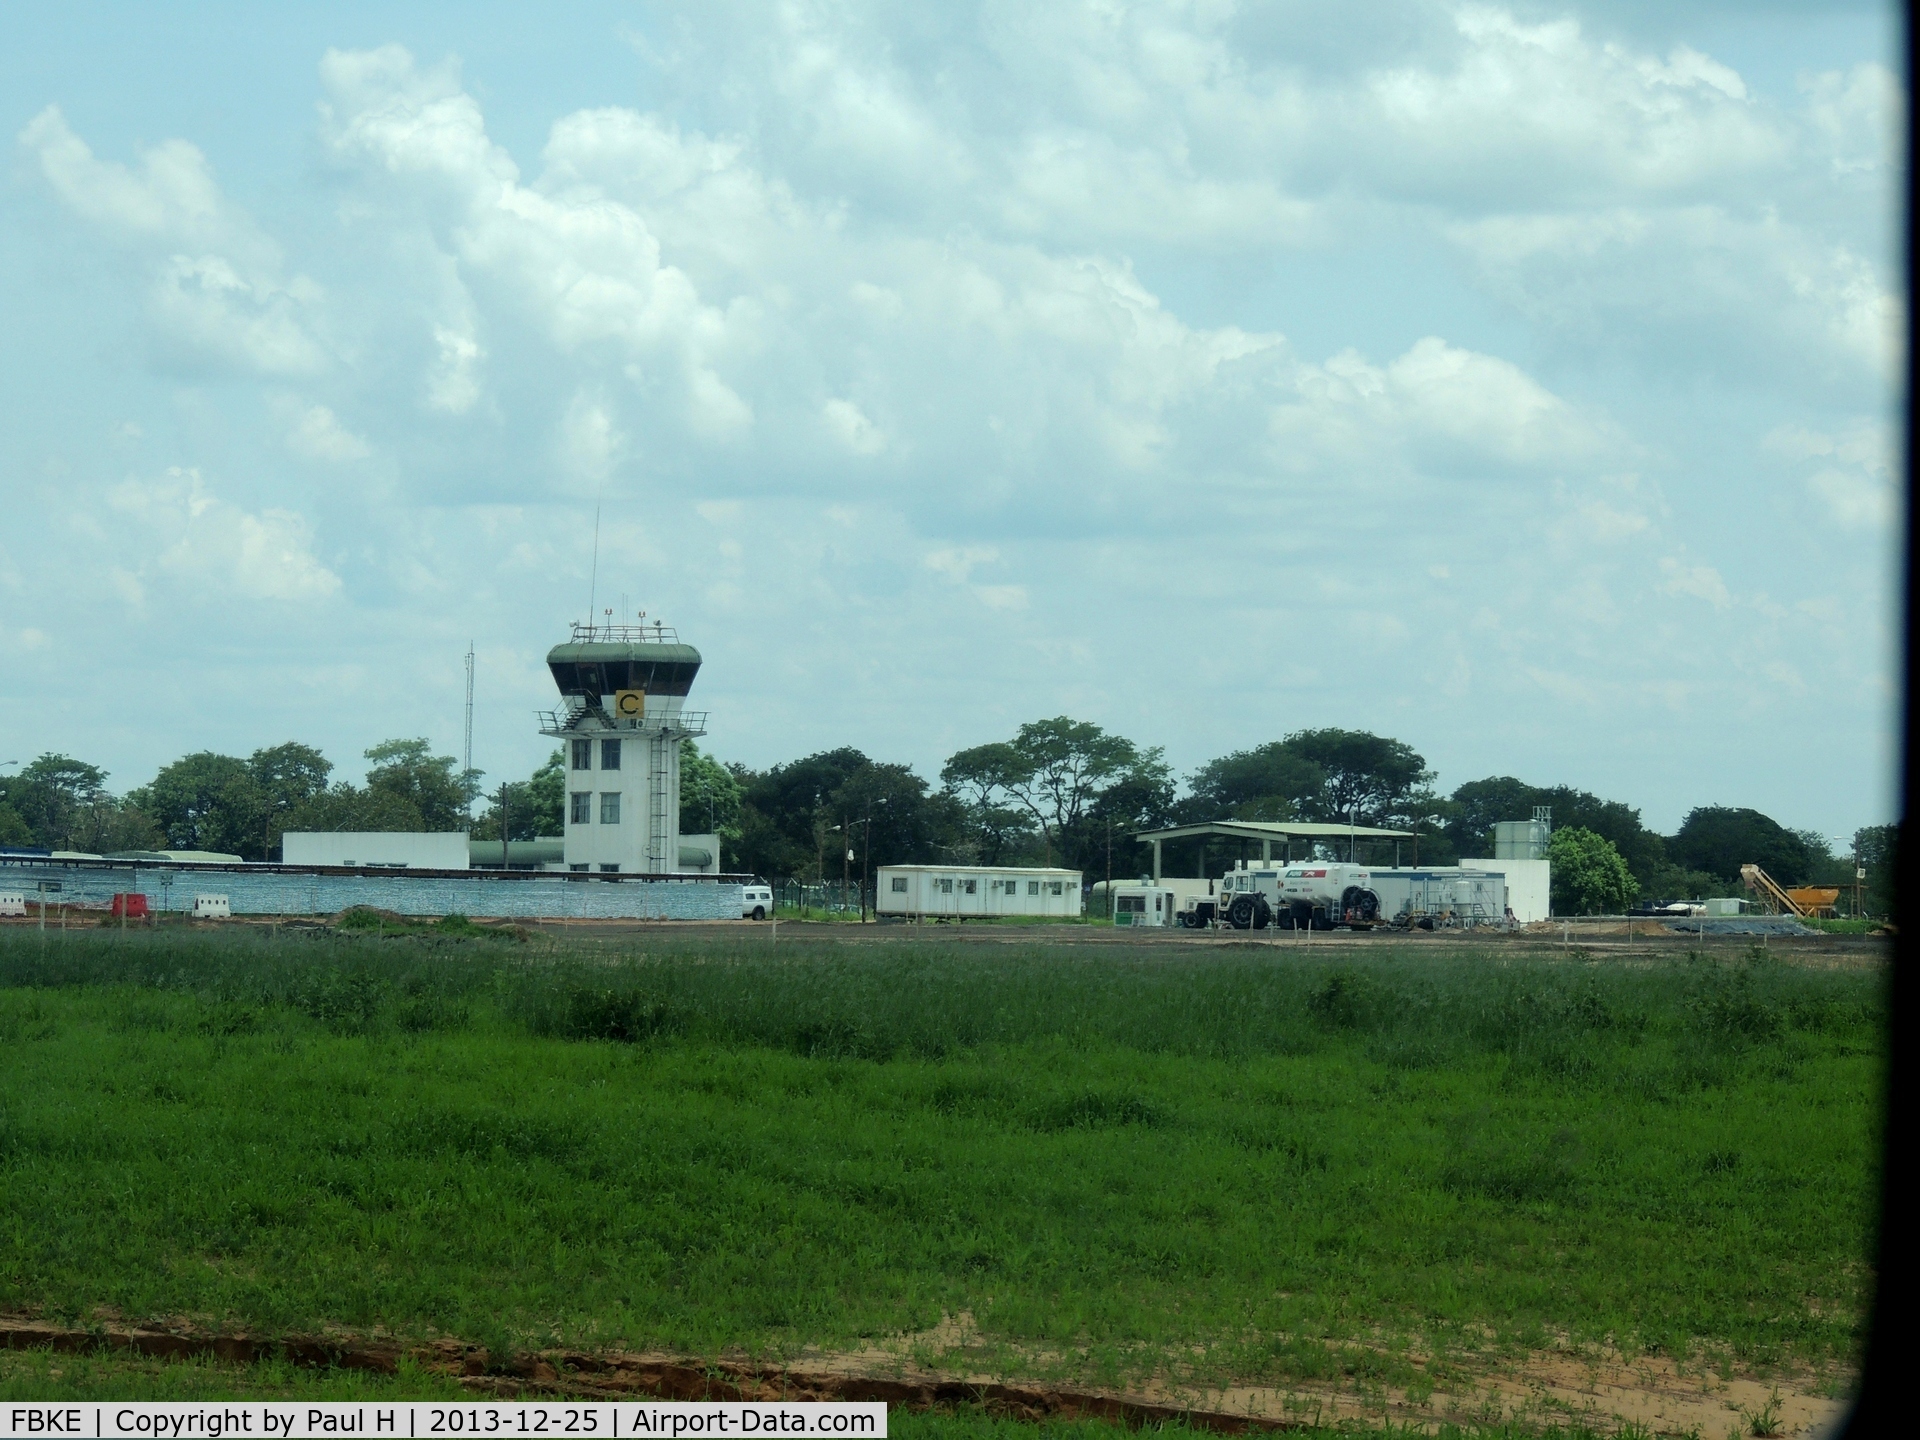 Kasane Airport, Kasane Botswana (FBKE) - Airport getting restaured